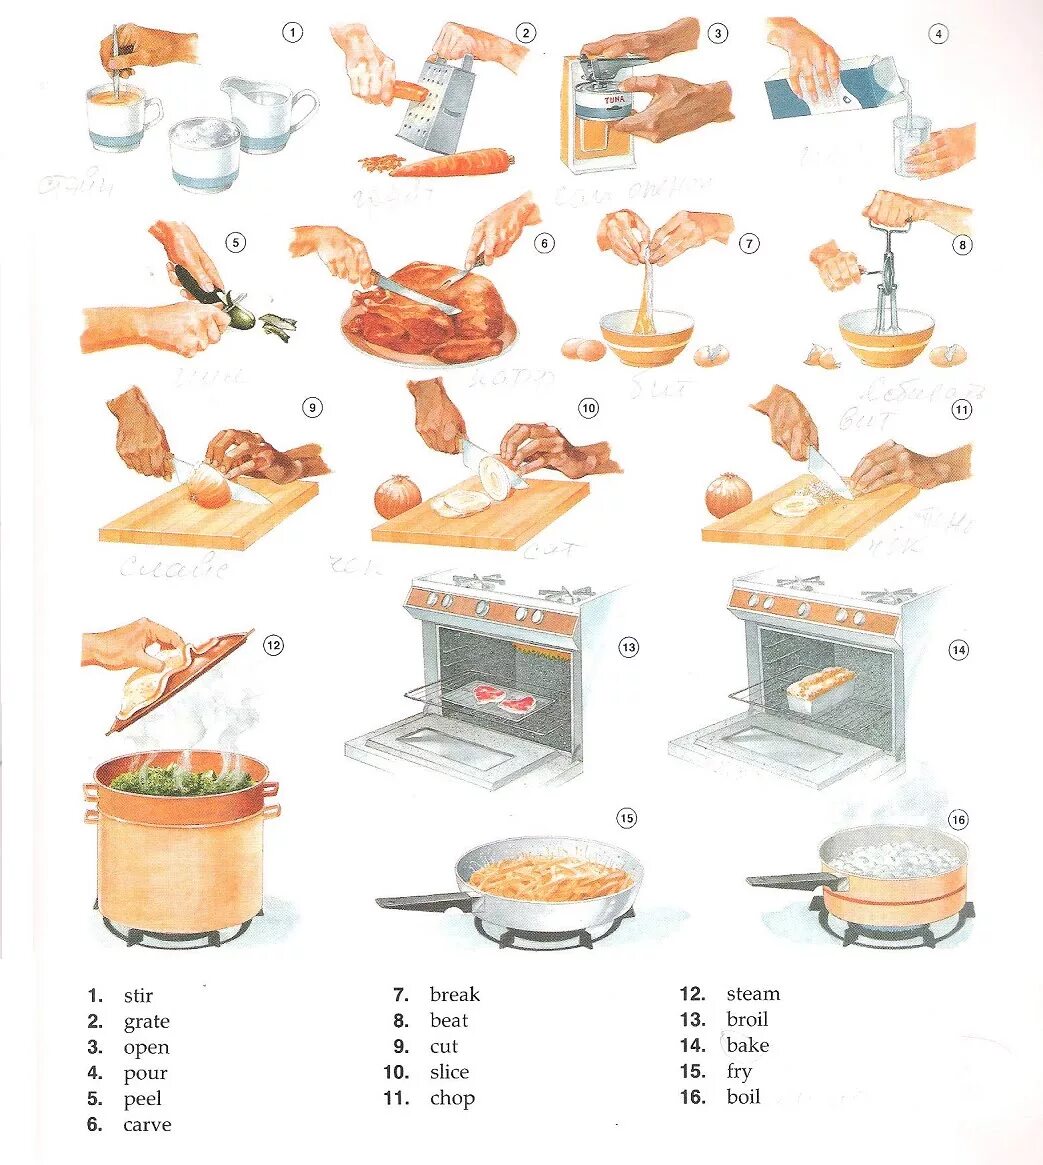 Глаголы приготовления пищи. Приготовление пищи на английском. Готовка еды на английском языке. Шдашолы для приготовления пищи. Переведи на английский готовить